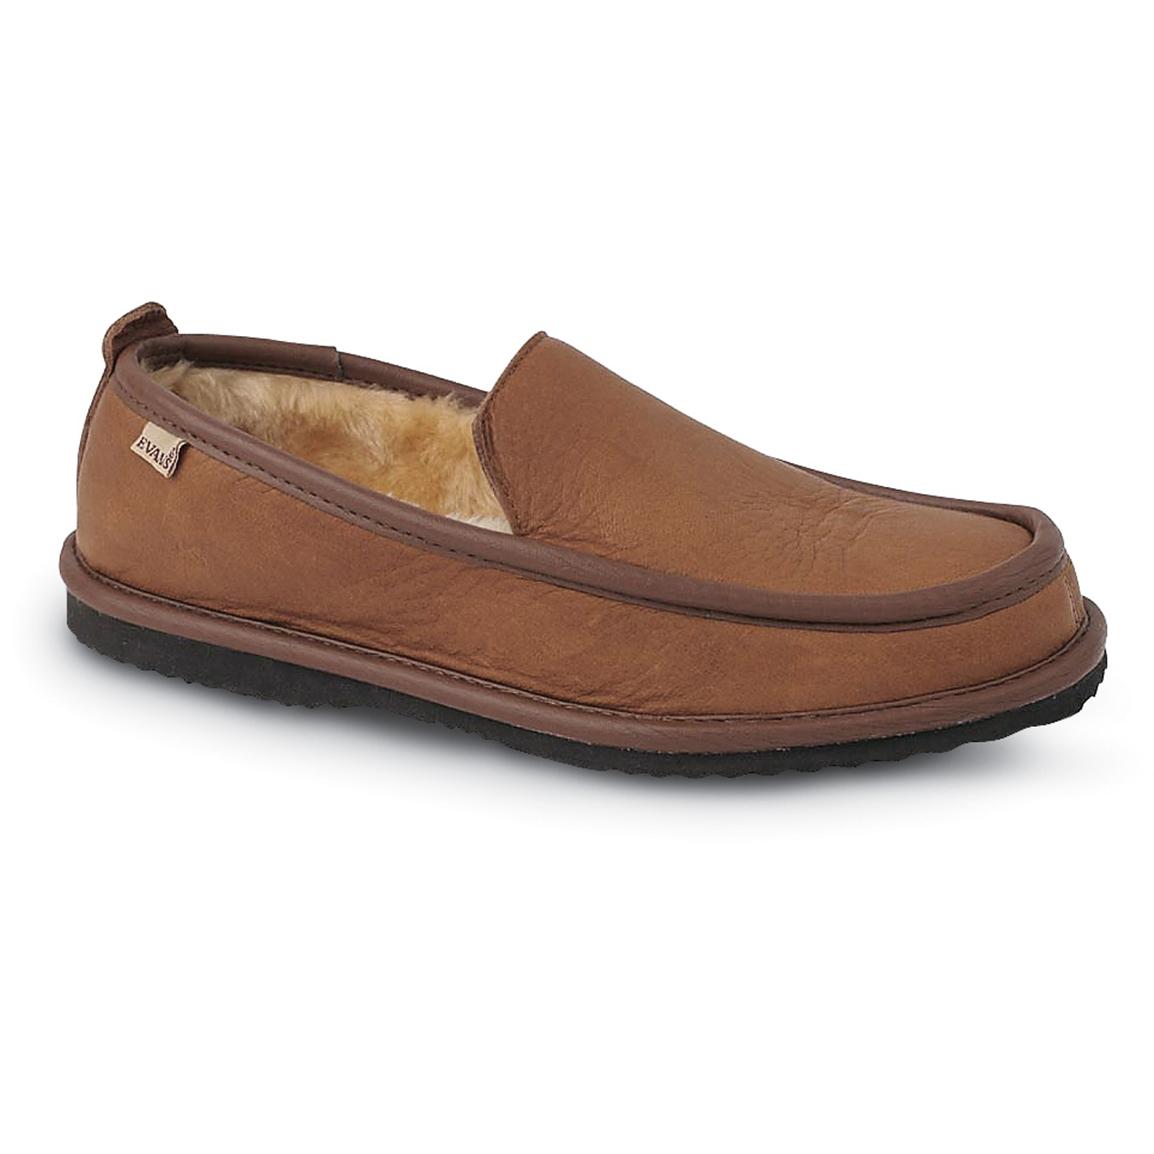 deerskin slippers